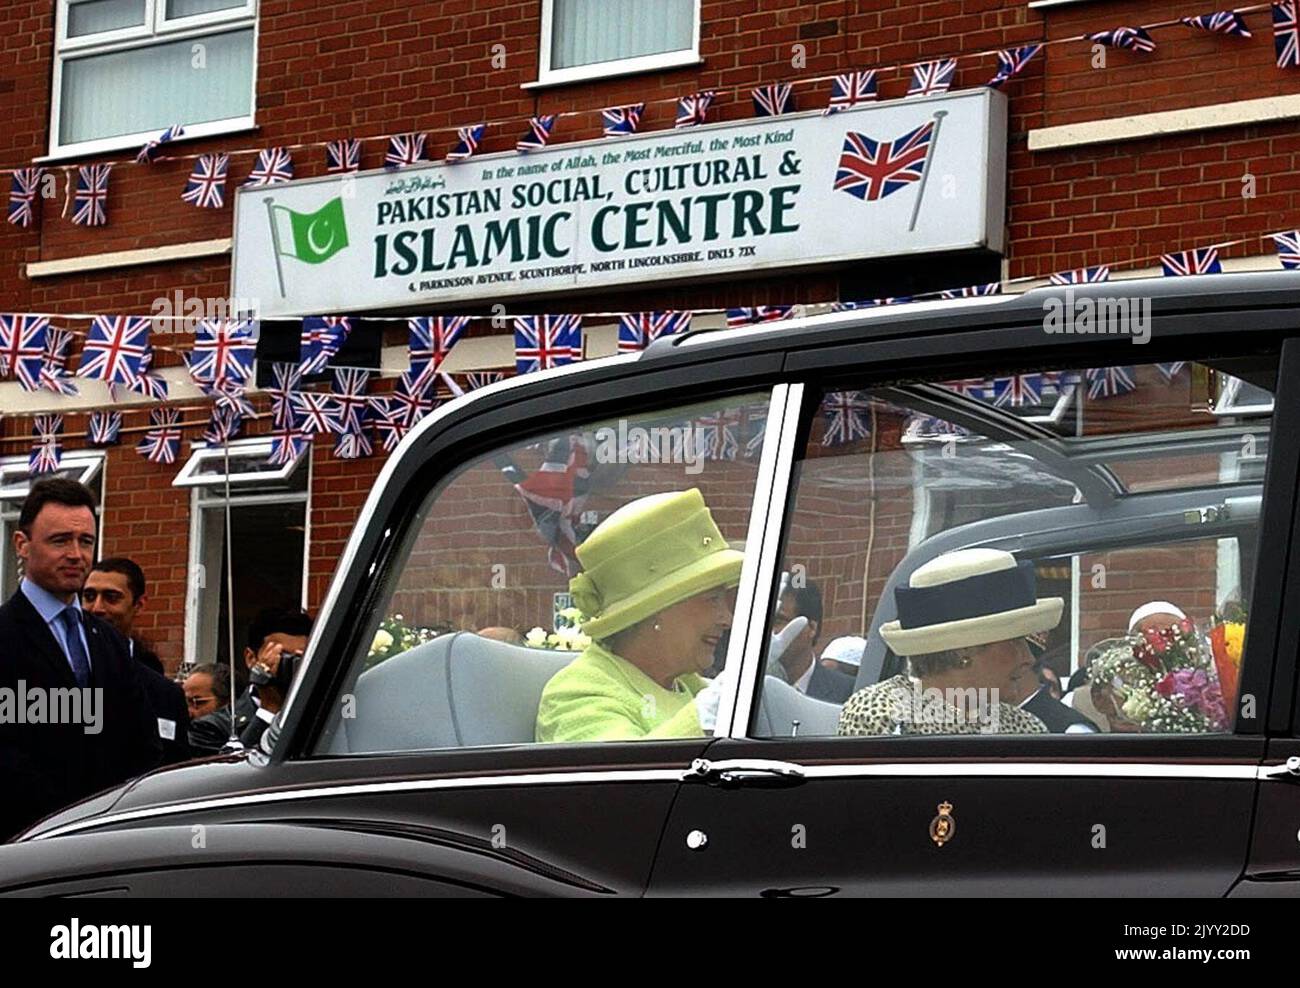 Foto de archivo de fecha 31/7/2002 de la Reina Isabel II agitando a las multitudes después de recibir regalos durante su visita a una mezquita en Scunthorpe, al norte de Lincolnshire. Fecha de emisión: Jueves 8 de septiembre de 2022. Foto de stock